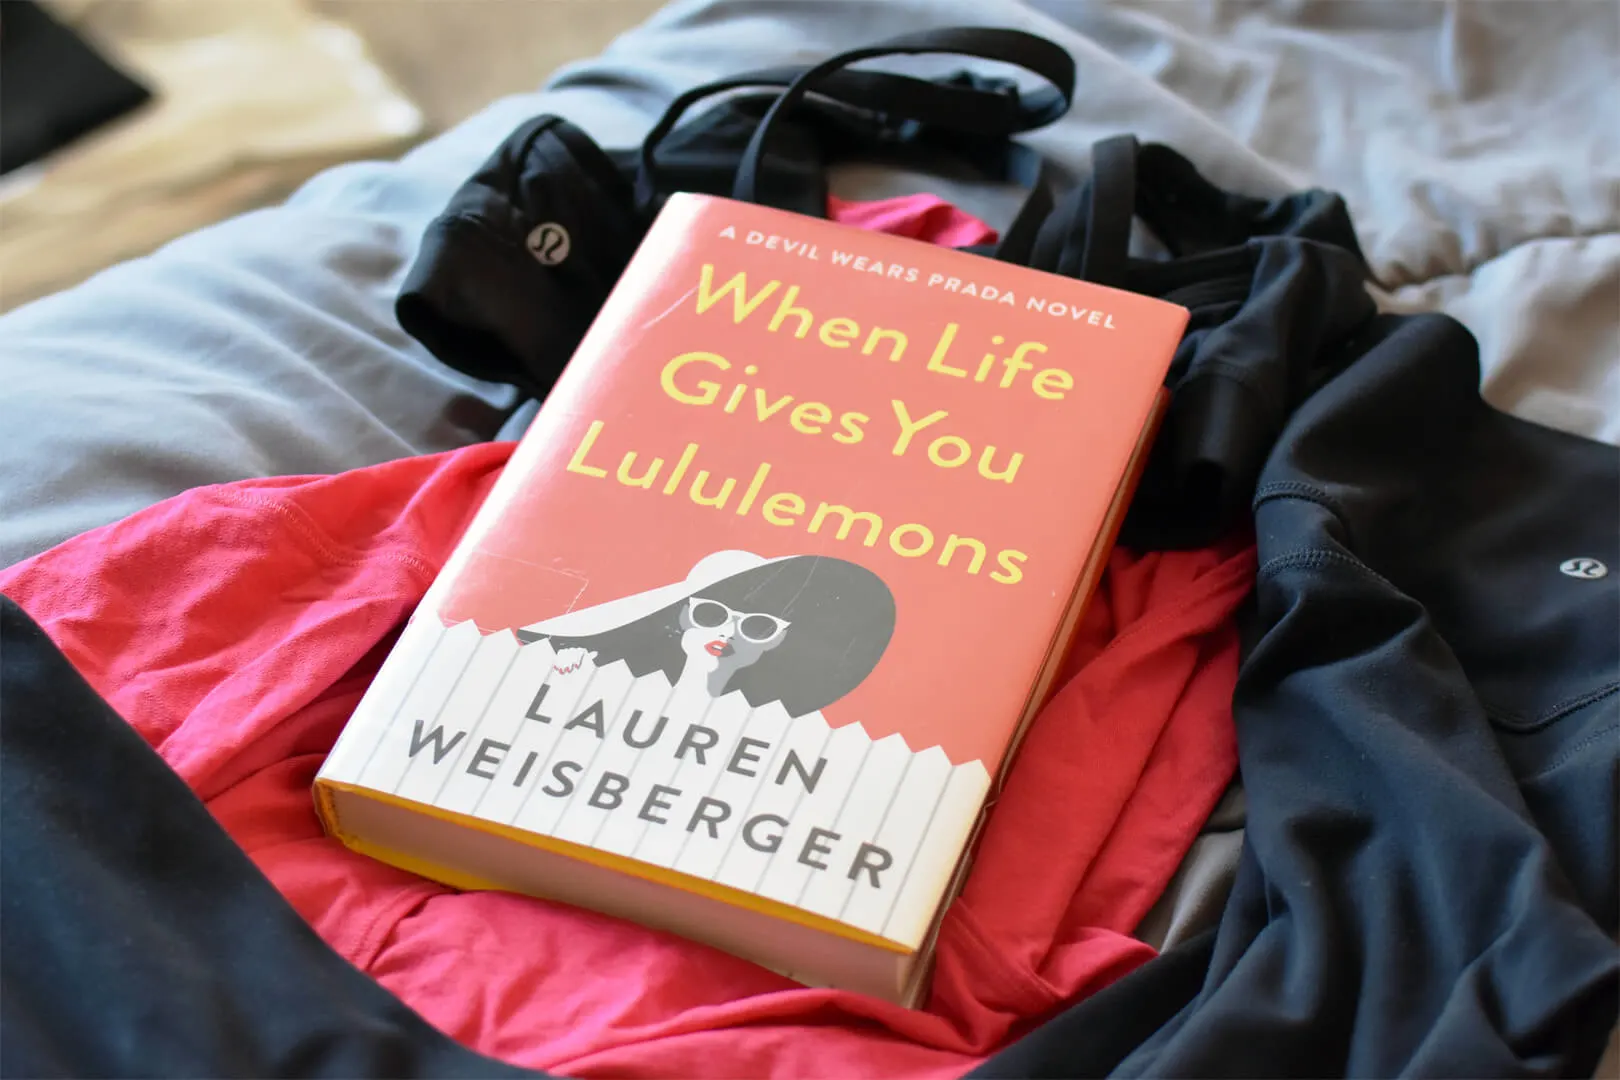 When Life Gives You Lululemons: Weisberger, Lauren: 9781476778440